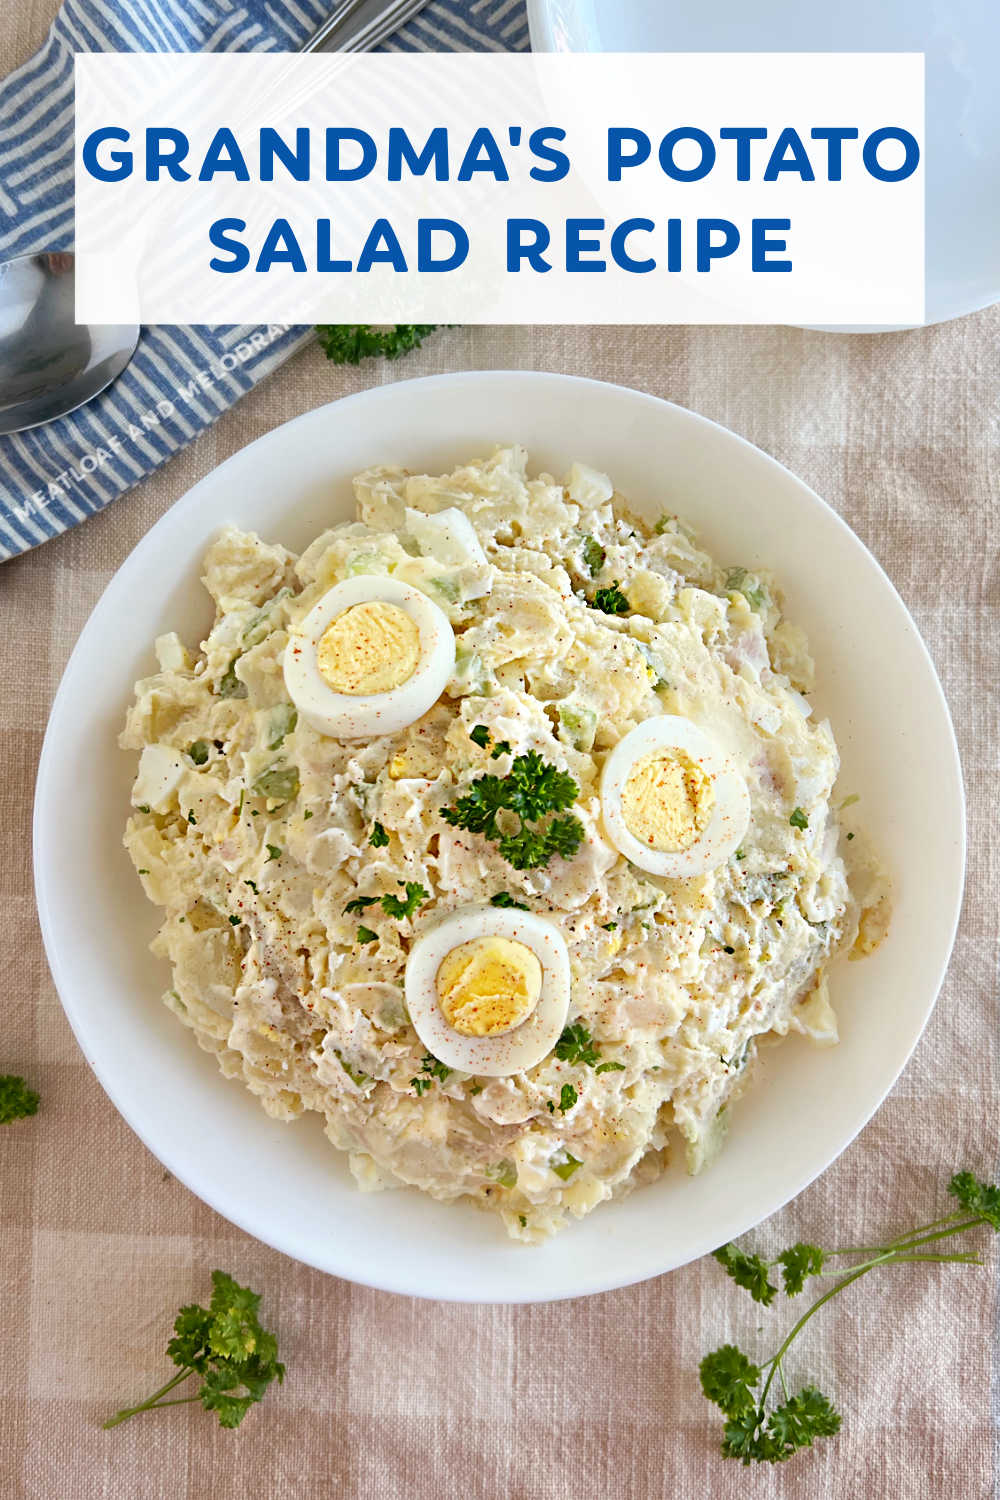 Το Grandma's Potato Salad Recipe είναι μια εύκολη ντεμοντέ πατατοσαλάτα με λίγα υλικά.  Ένα λαχταριστό συνοδευτικό για το καλοκαίρι και αγαπημένο της οικογένειας!  Αυτή η κλασική πατατοσαλάτα έχει γεύση όπως έφτιαχνε η μαμά!  μέσω @meamel